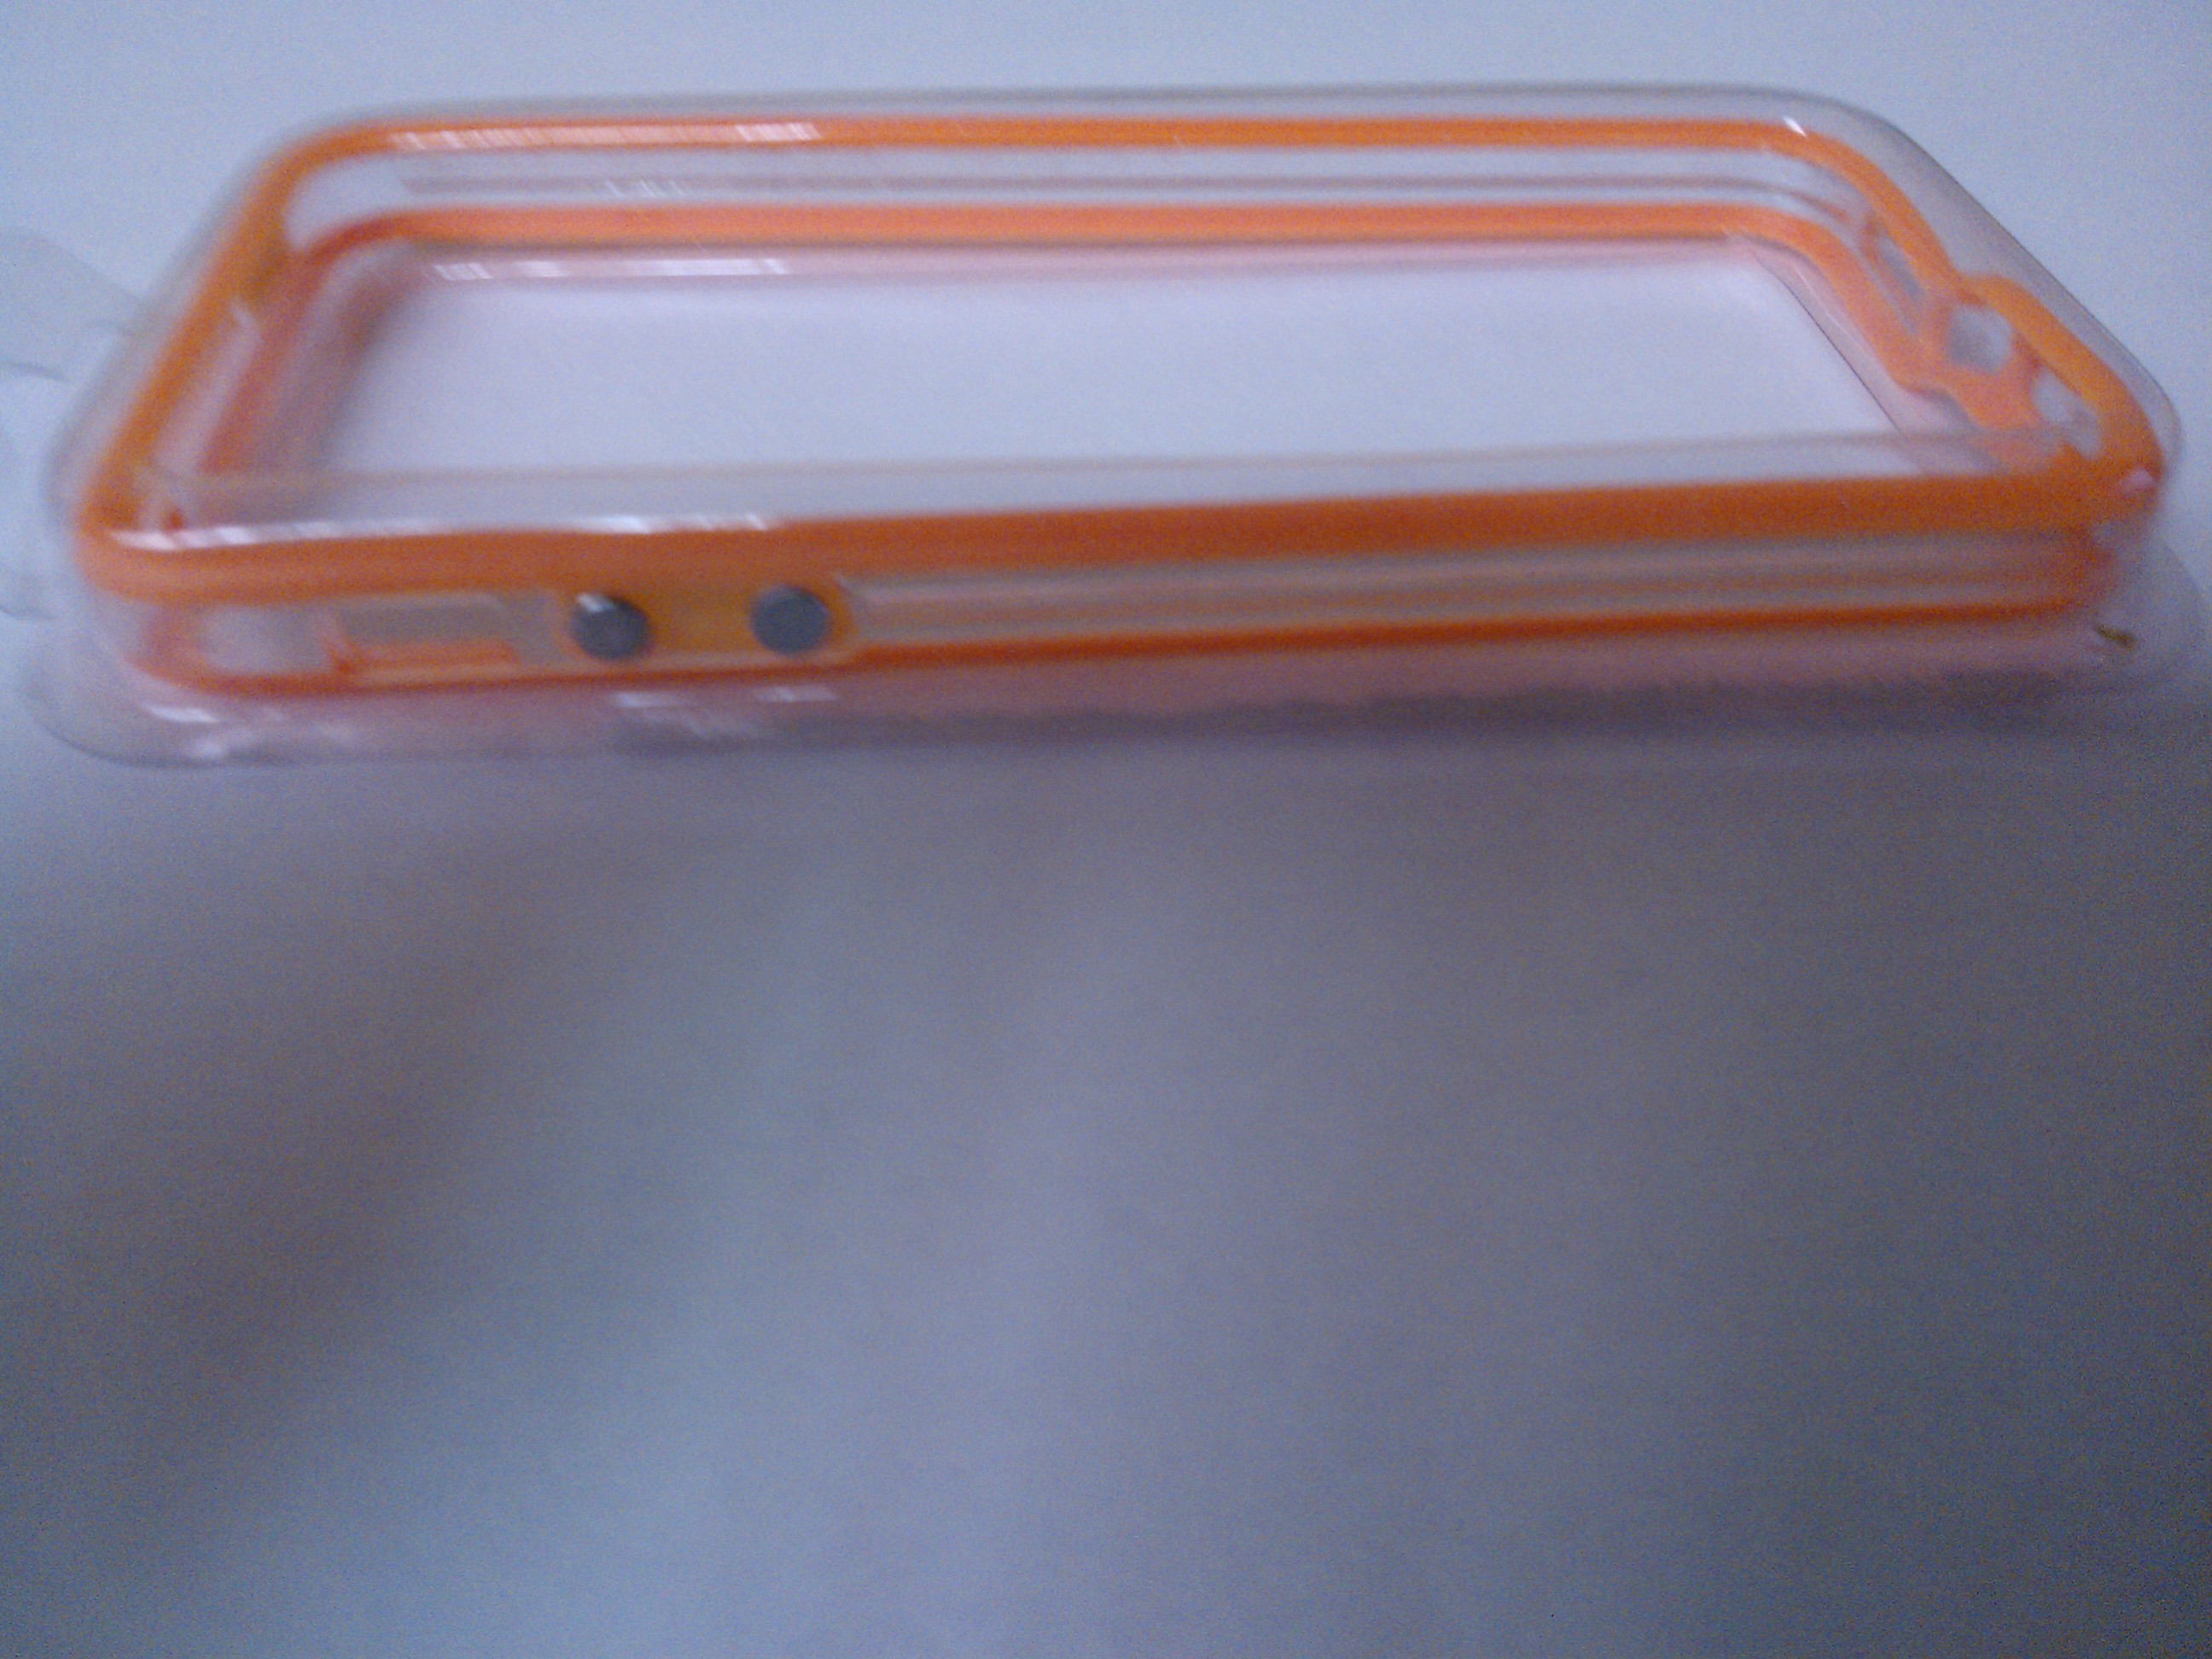 iPhone 5 OEM Bumper Orange Transparent